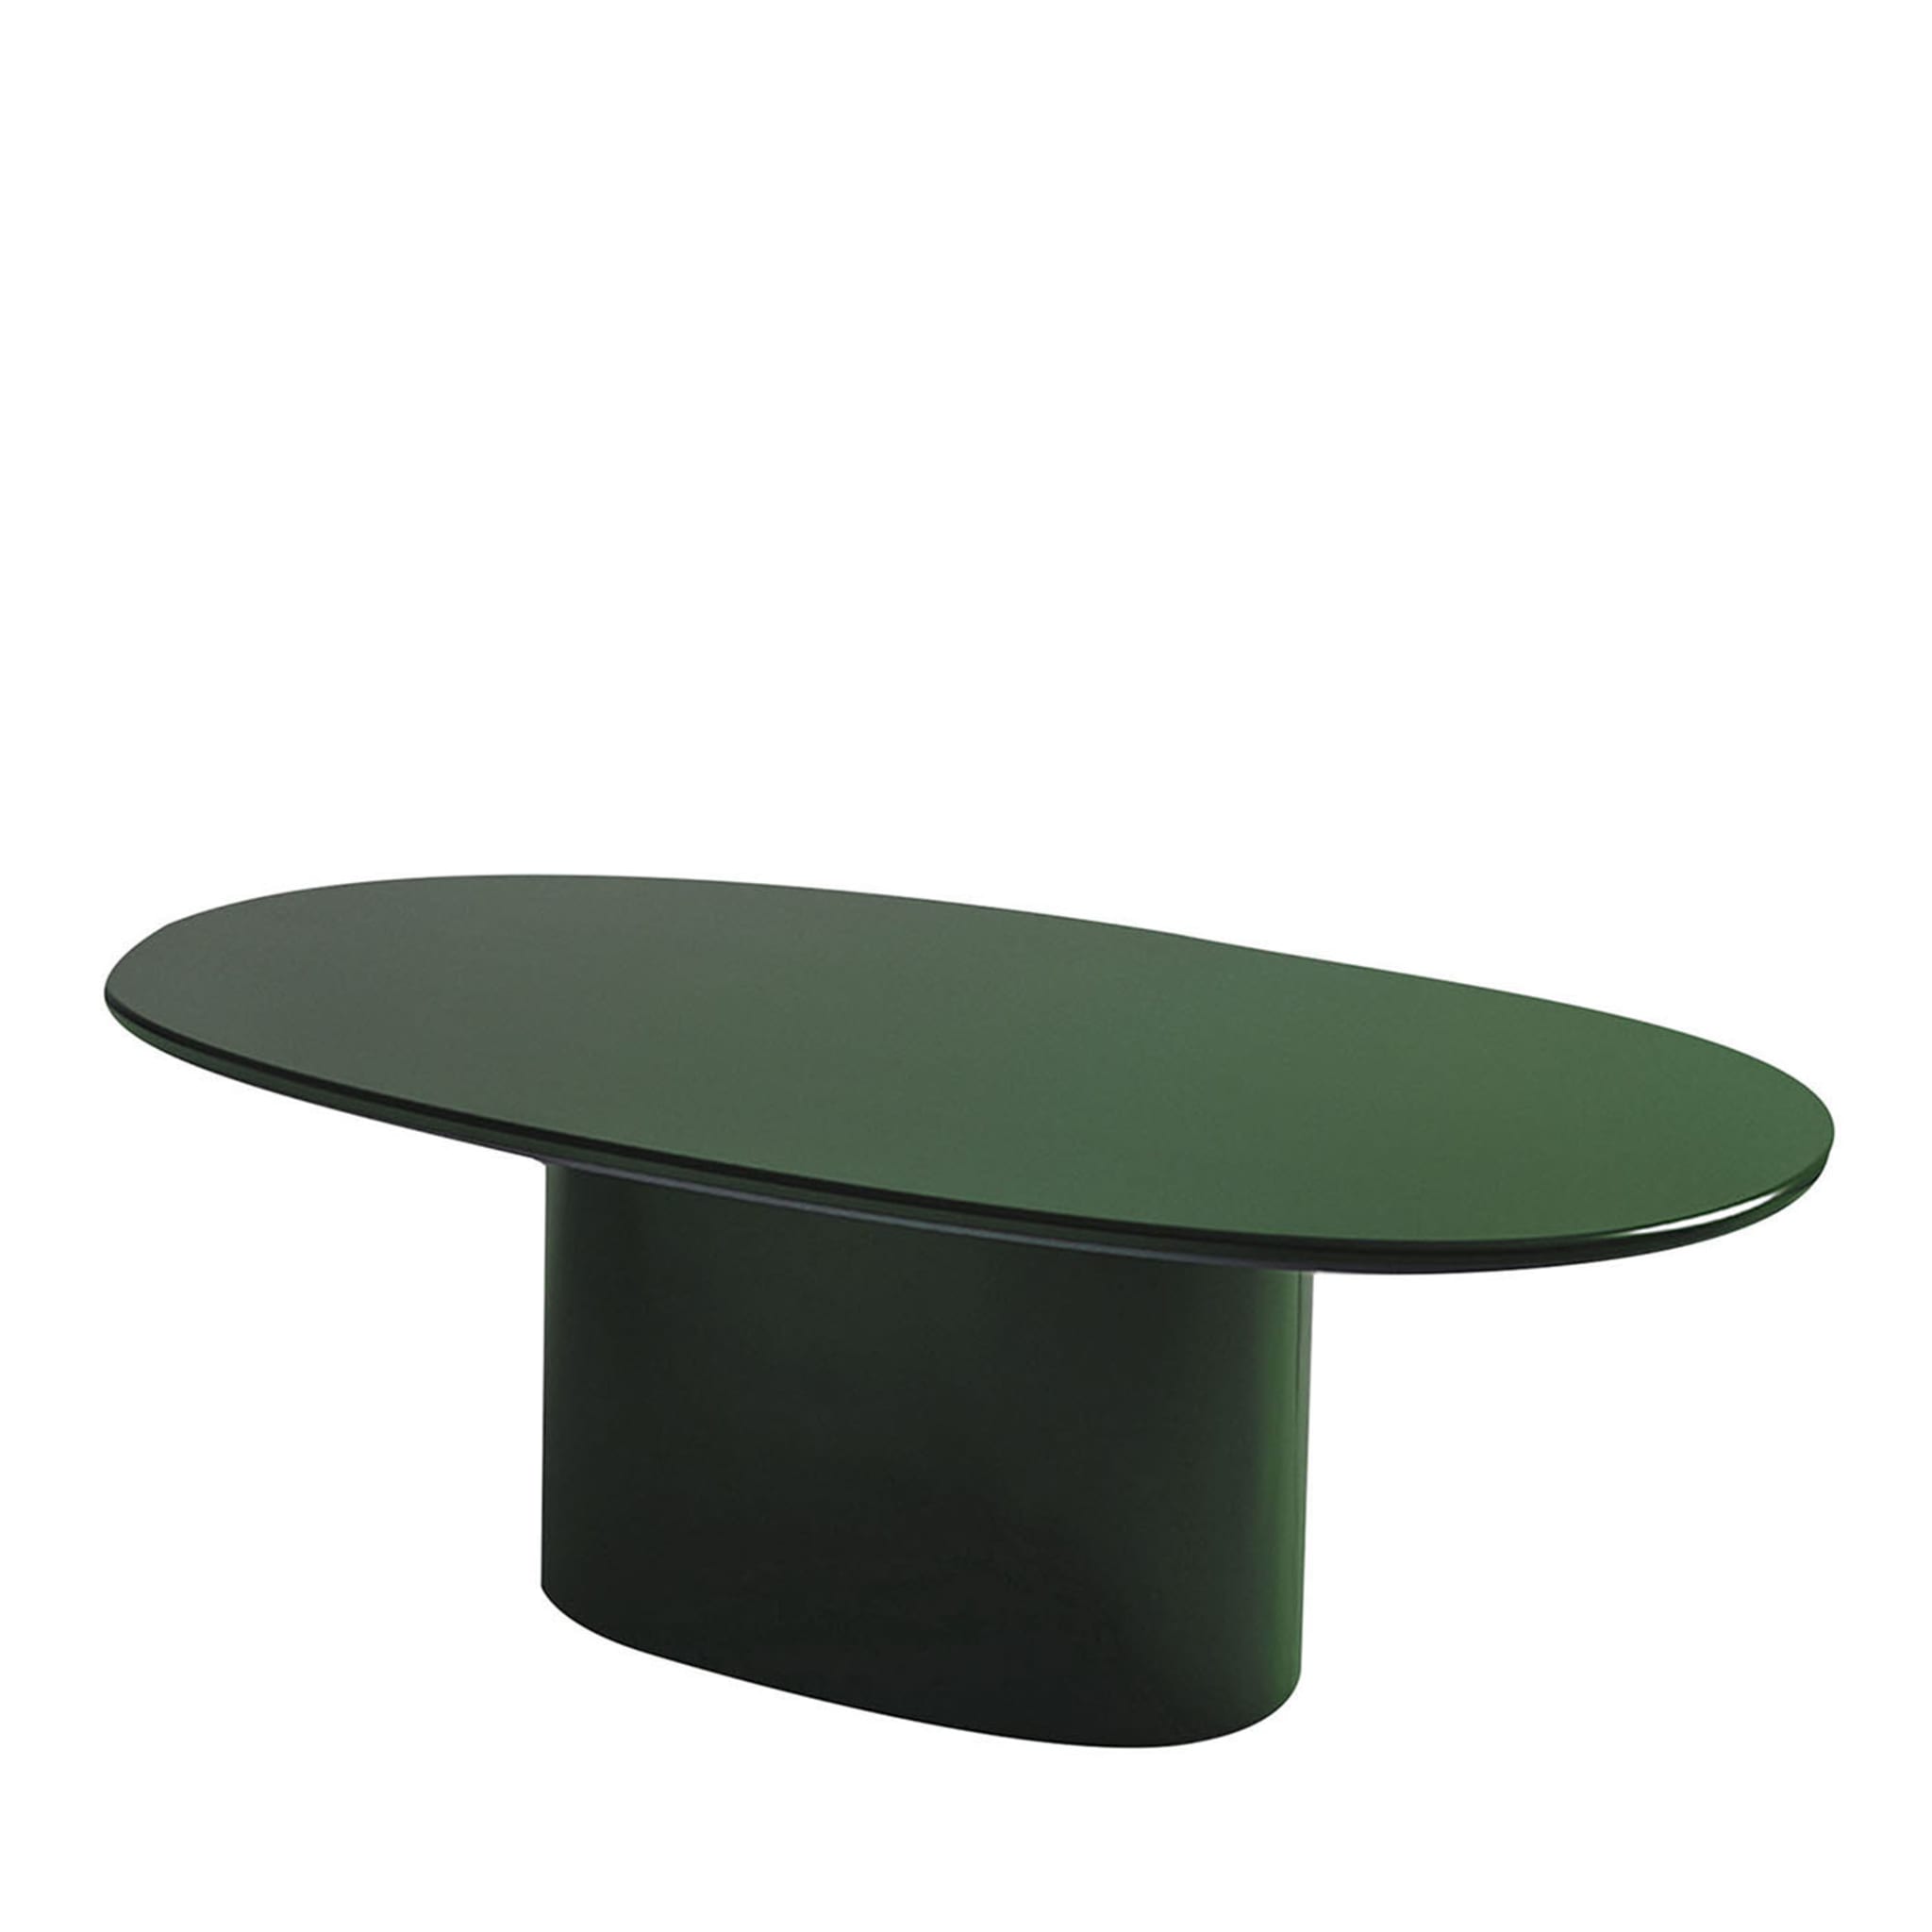 Table de salle à manger ovale verte Oku par Federica Biasi - Vue principale